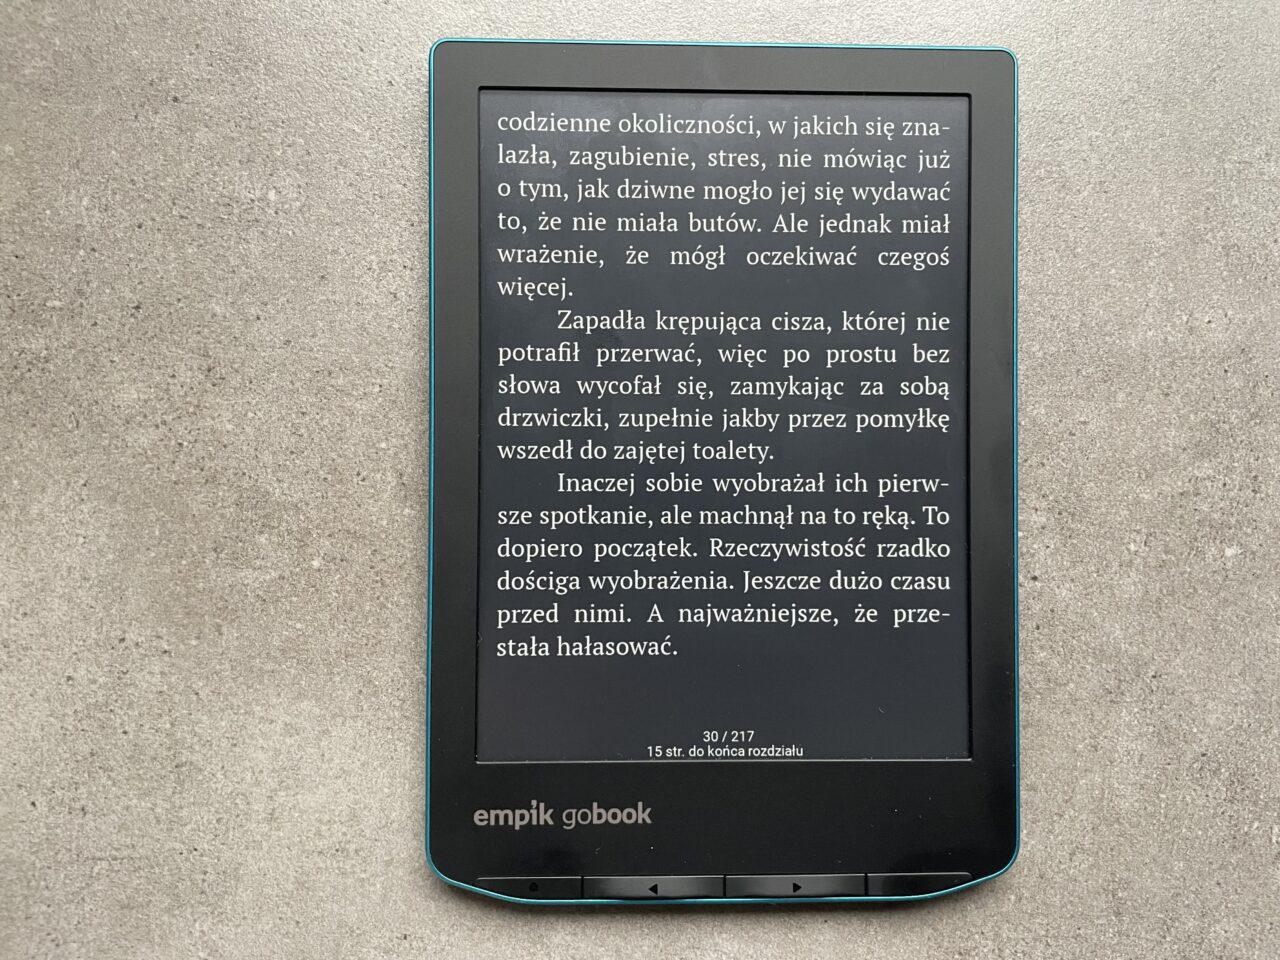 Czytnik e-booków marki Empik leżący na szarym tle, z wyświetlonym tekstem w języku polskim i widocznymi elementami interfejsu użytkownika, takimi jak numer strony i pasek postępu.